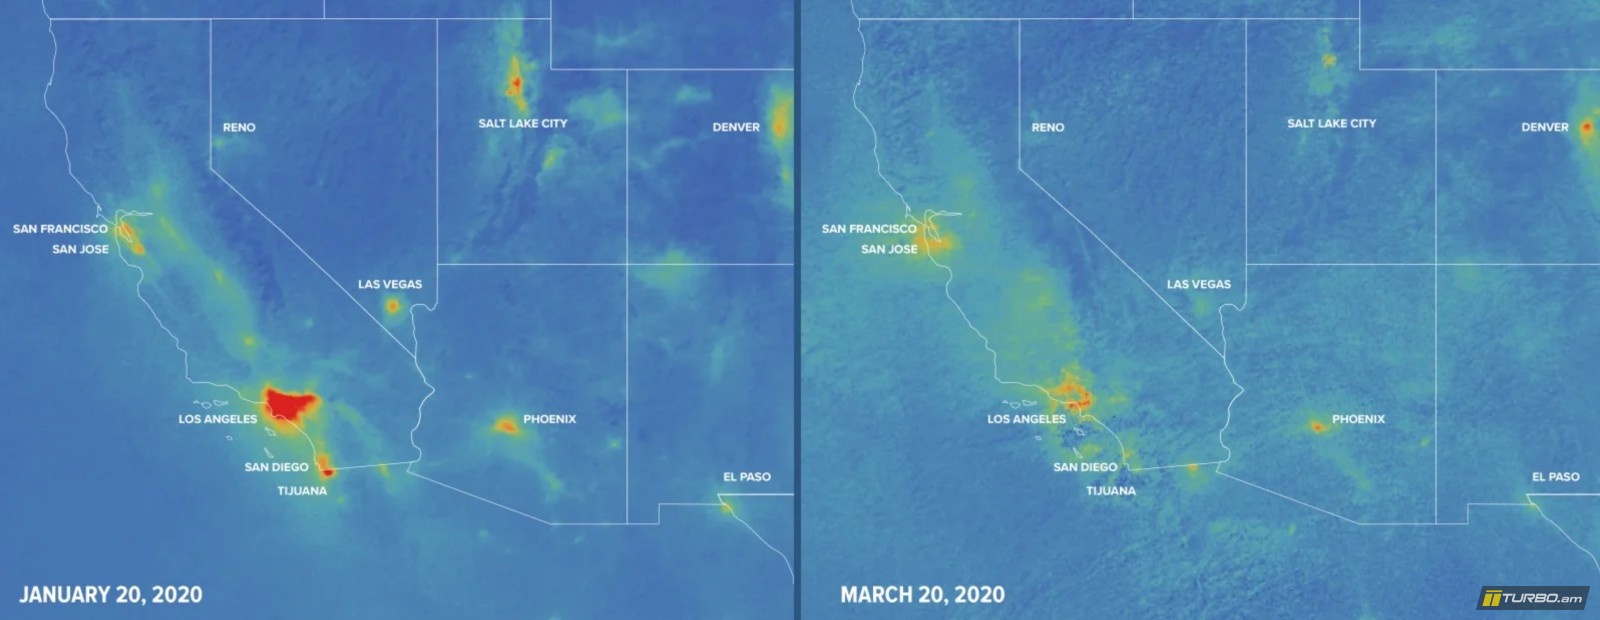 Արբանյակներից ստացված և արհեստական գույներով ներկայացված այս երկու նկարներում երևում է ԱՄՆ-ի արևմտյան հատվածում ազոտի երկօքսիդի պարունակությունը օդում: Նկարներն արվել են հունվարի 20-ին ու մարտի 20-ին: